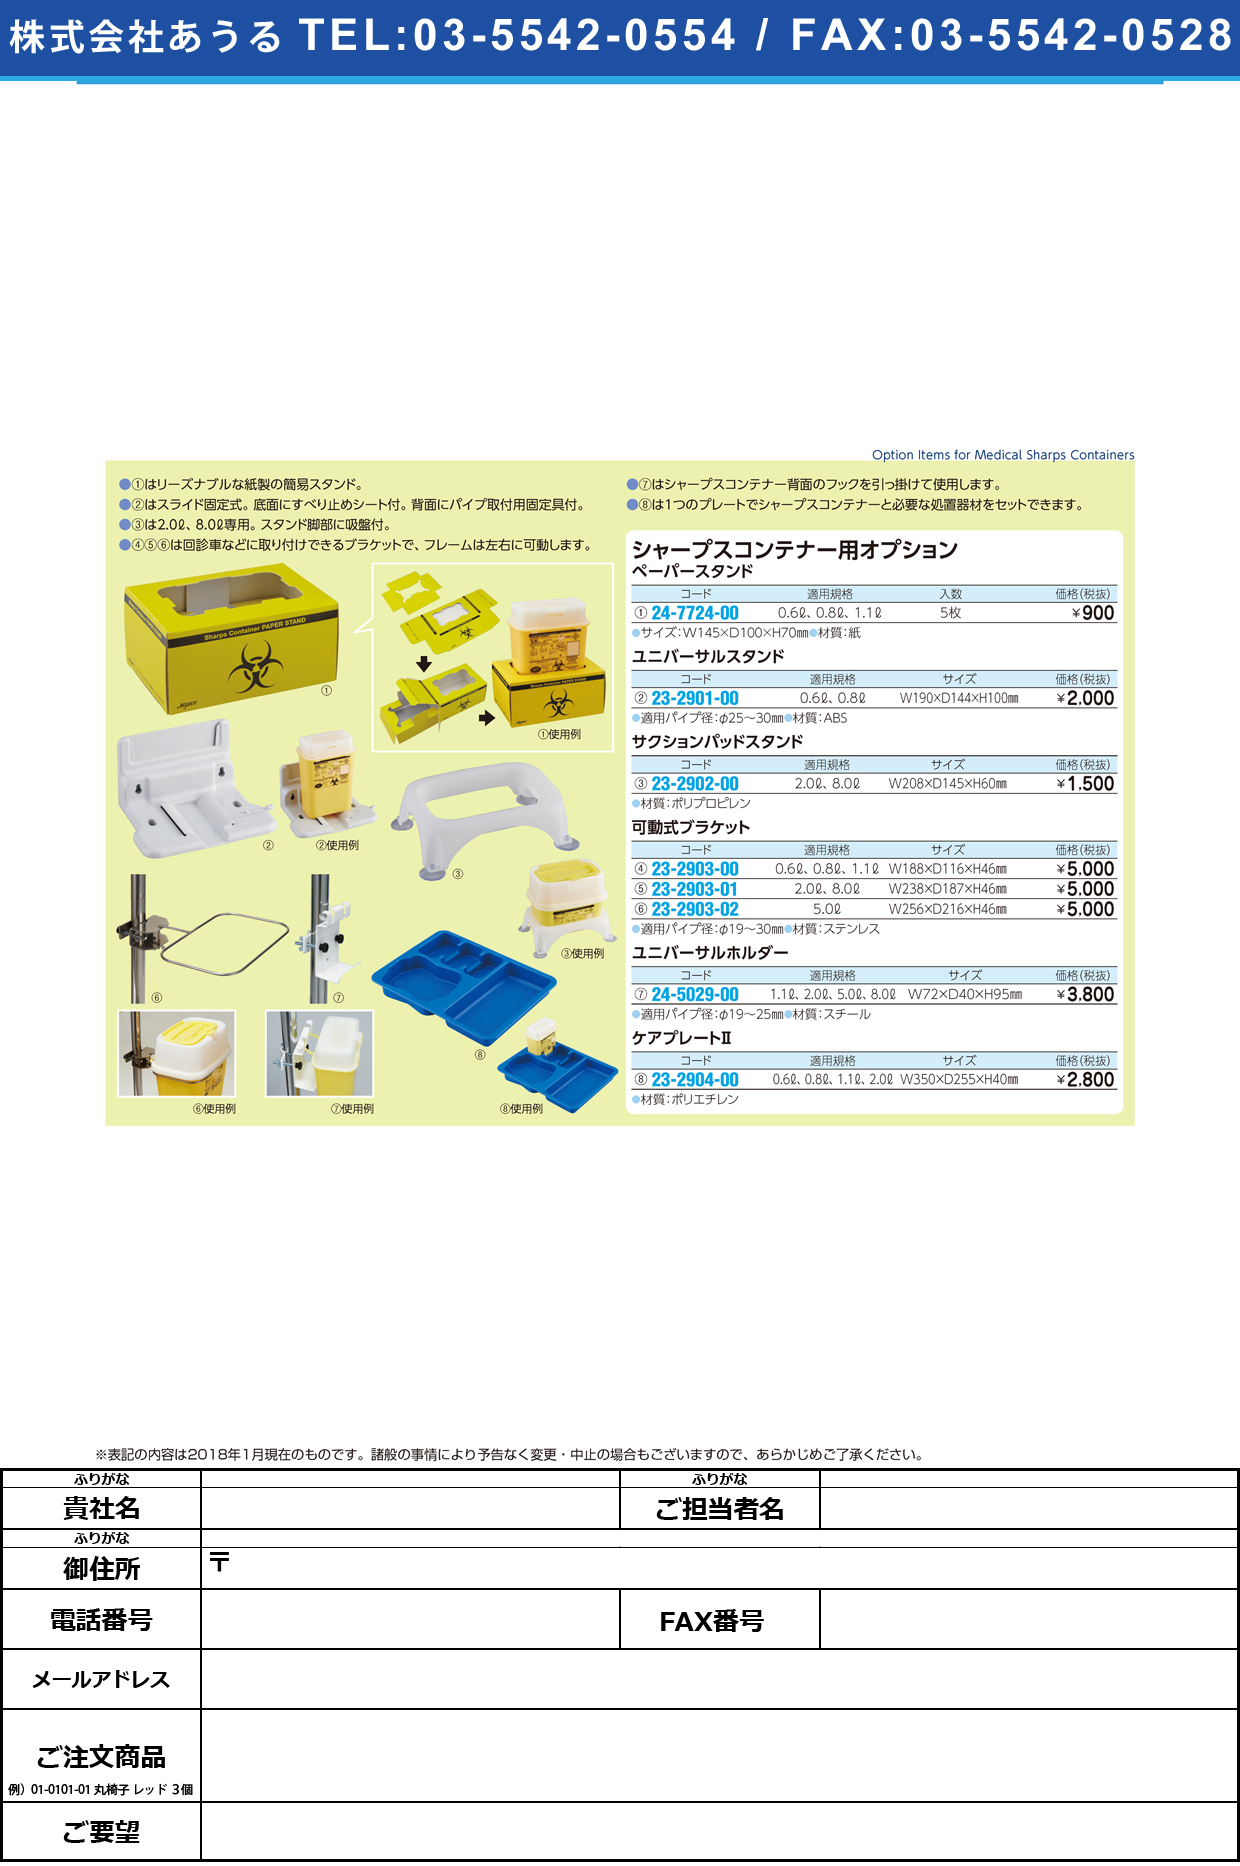 (23-2903-01)可動式ブラケット ST04071(2.0･8.0Lﾖｳ) ｶﾄﾞｳｼｷﾌﾞﾗｹｯﾄ【1個単位】【2019年カタログ商品】